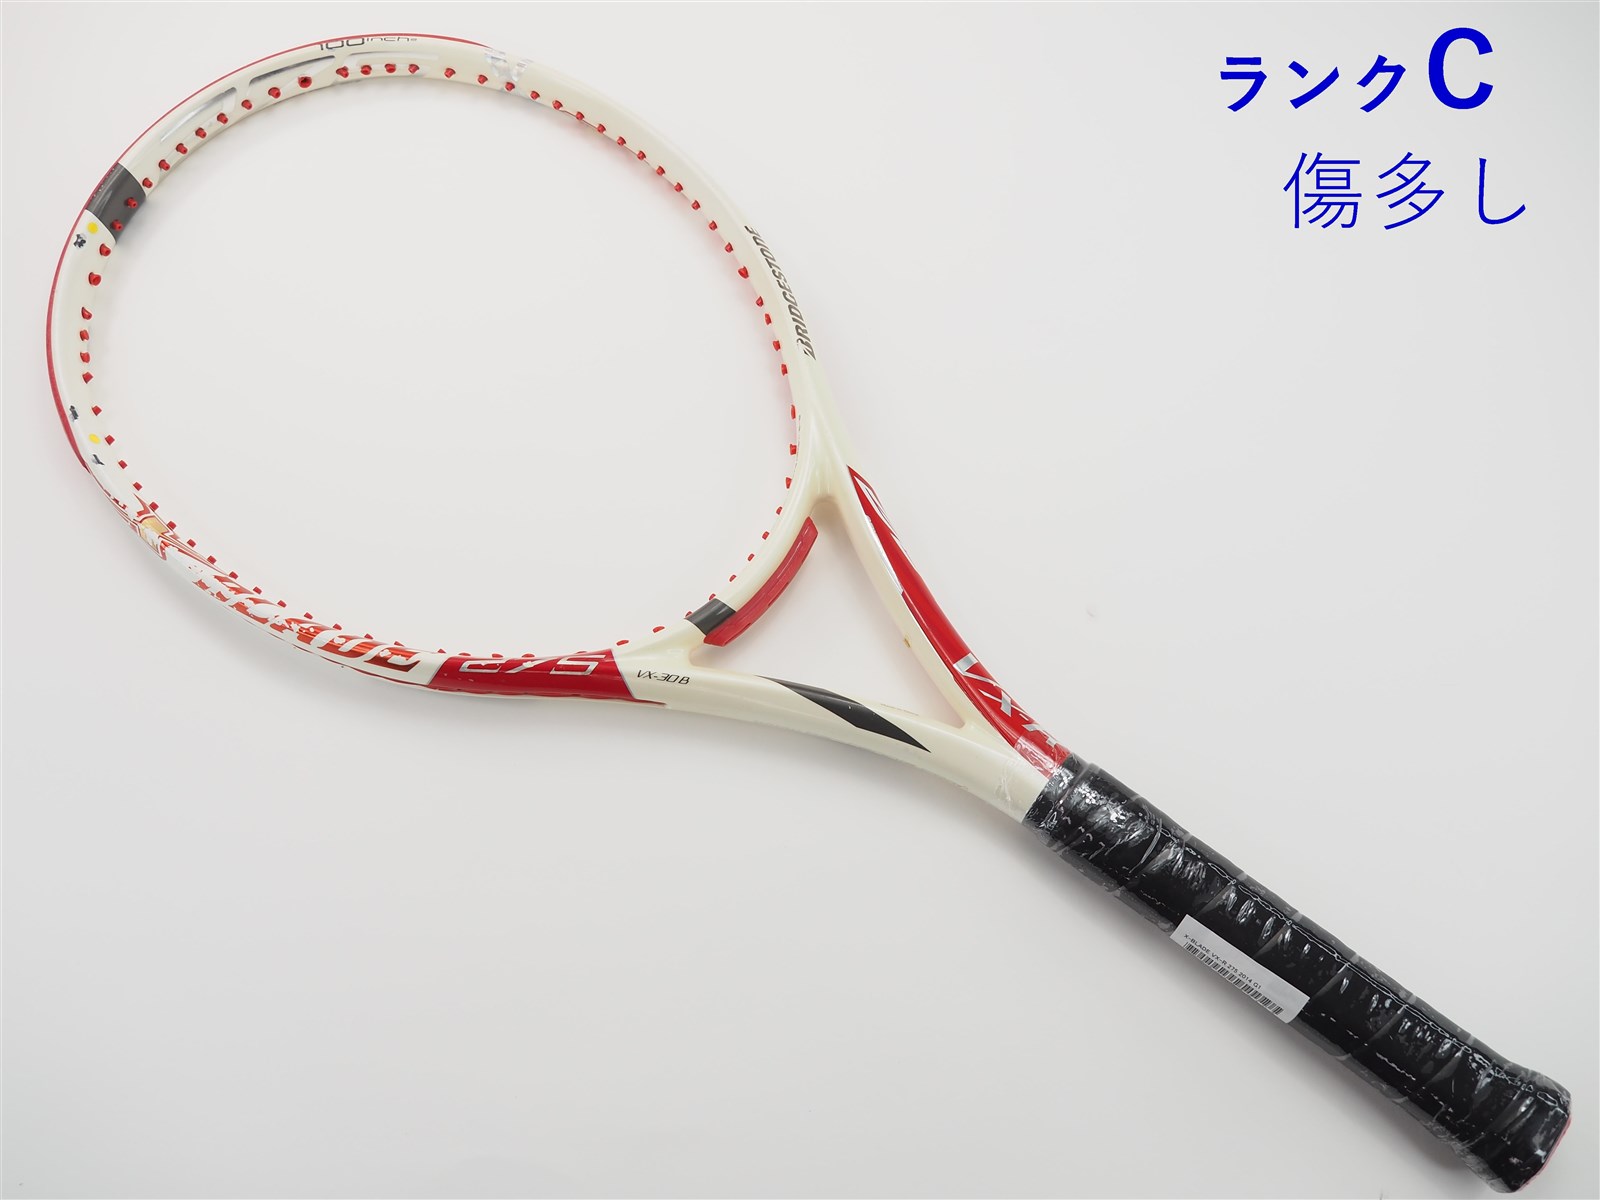 テニスラケット ブリヂストン エックスブレード ブイアイアール275 2016年モデル (G1)BRIDGESTONE X-BLADE VI-R275 2016